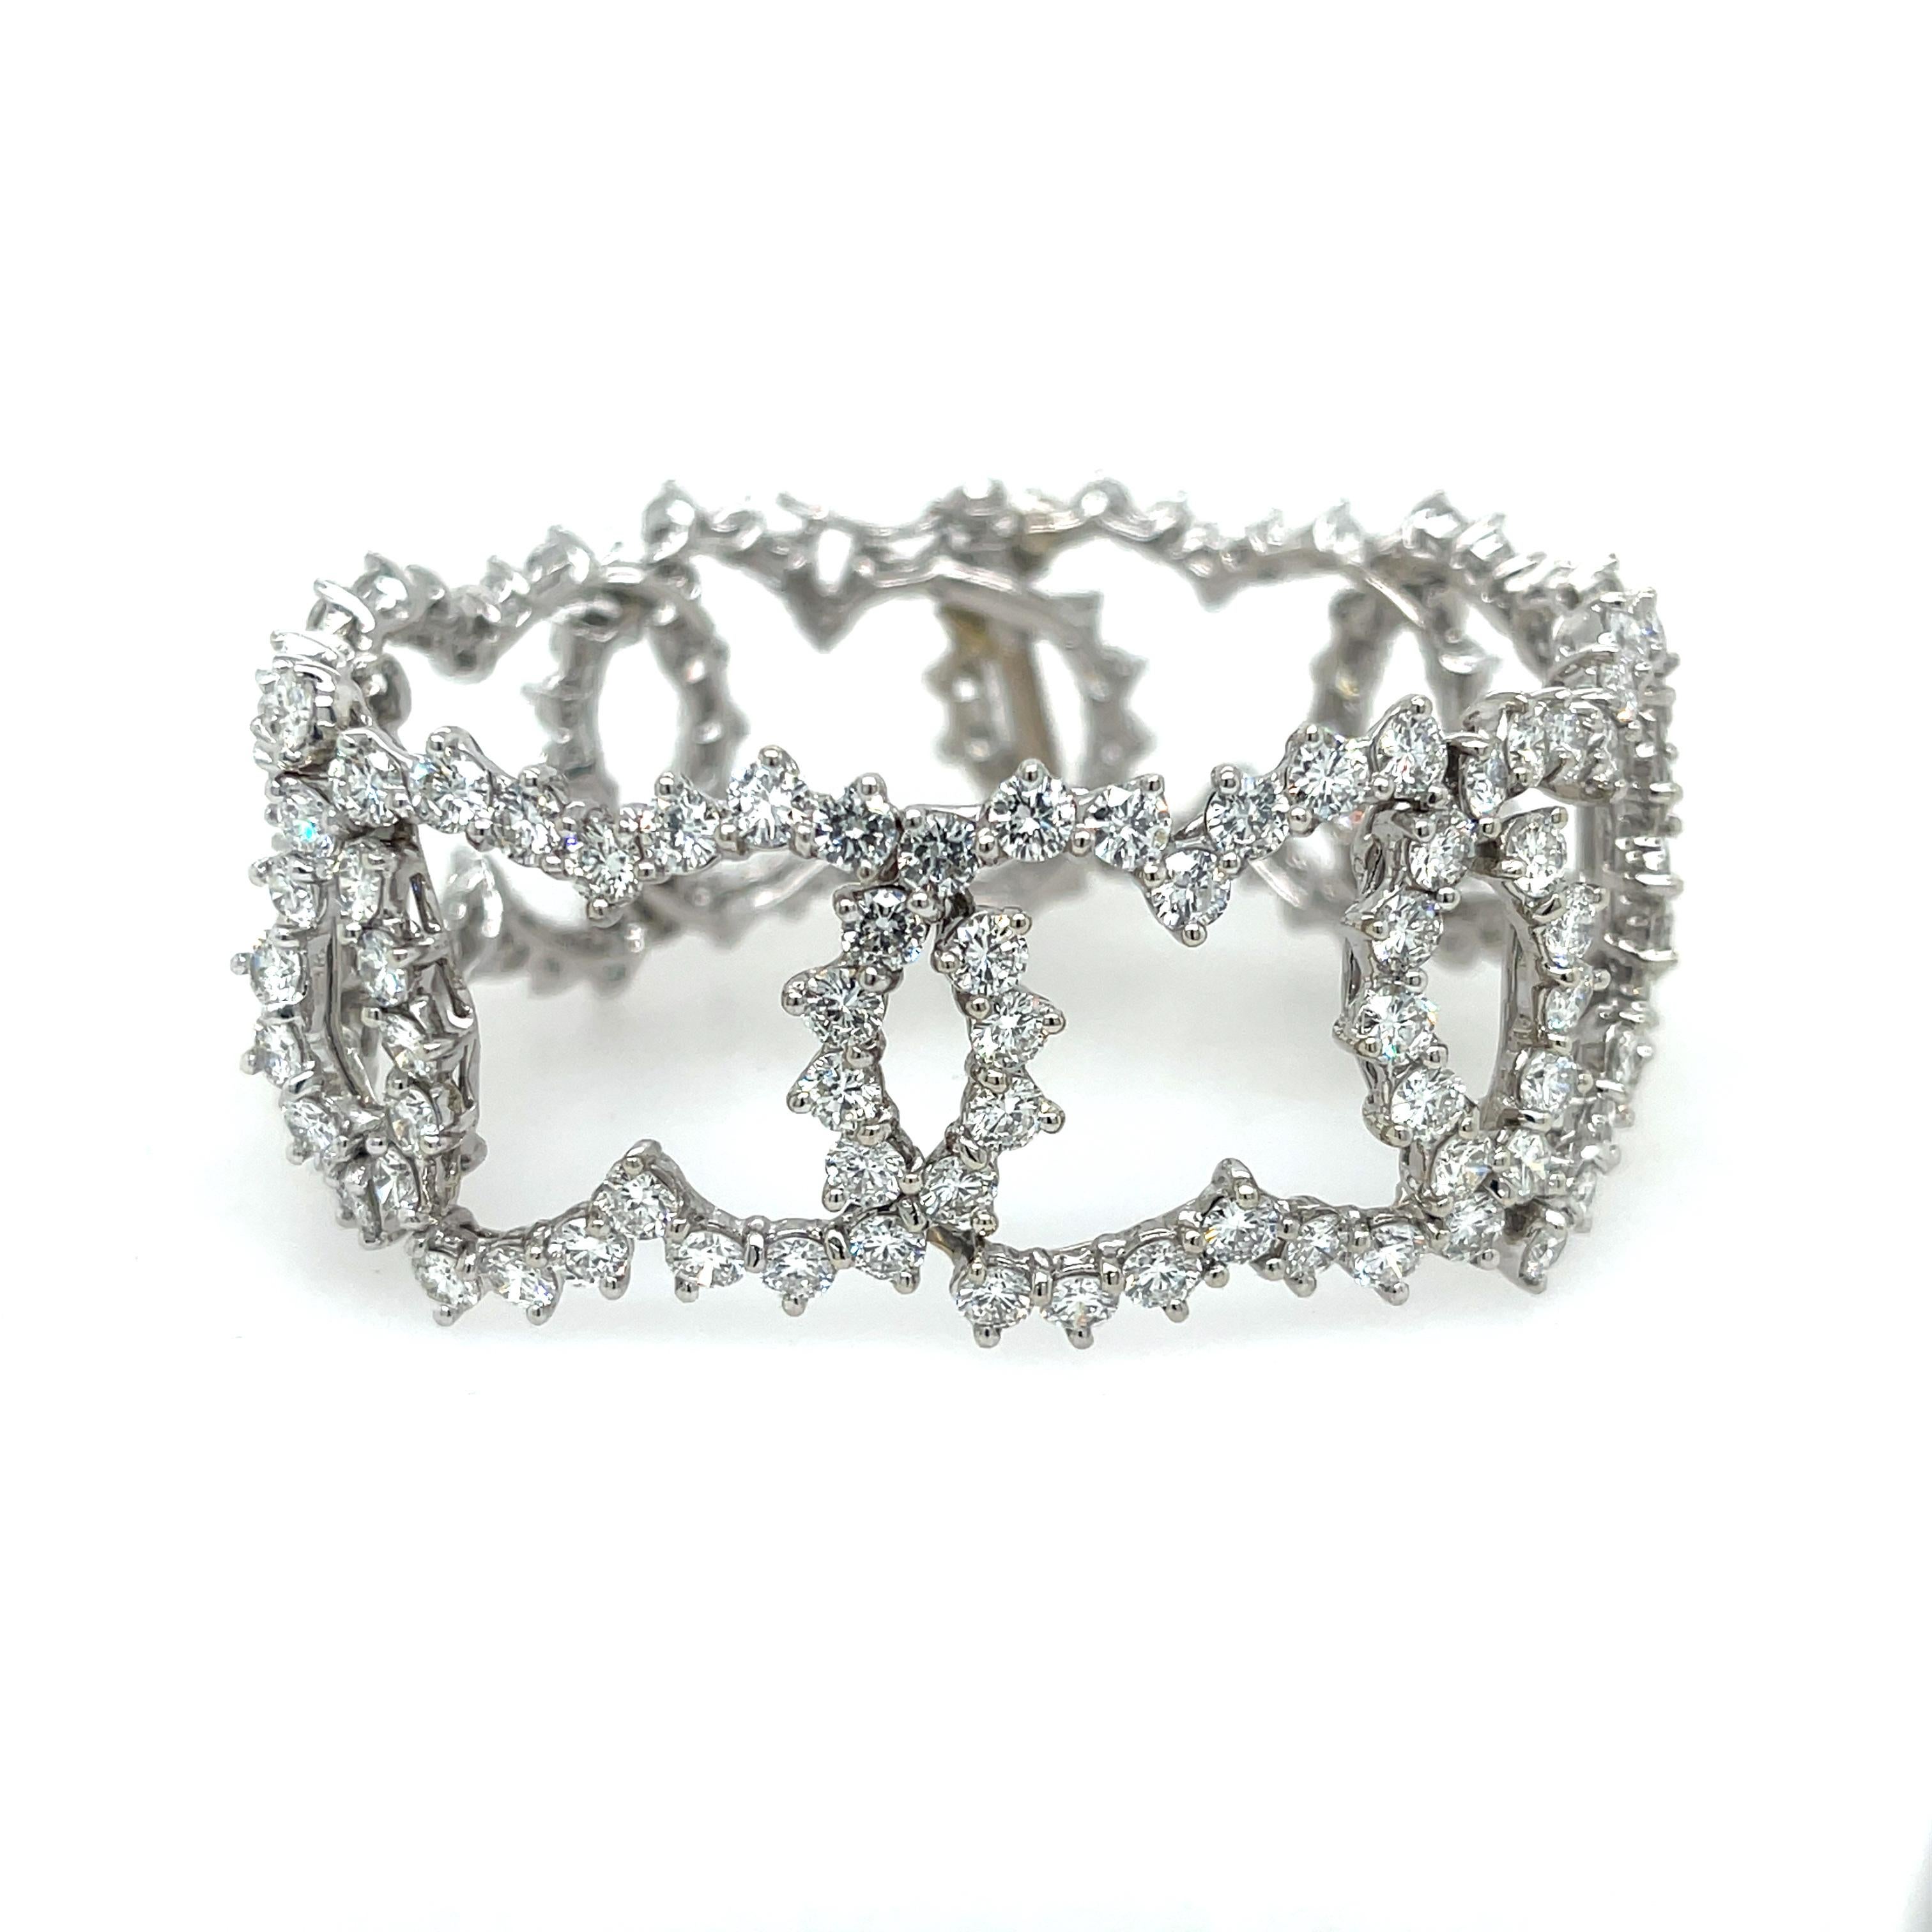 Estate Diamond Bracelet Crafted In Platin. Das Armband verfügt über ca. 27 ct runde Diamanten mit Brillanten.
36,5 Gramm
1